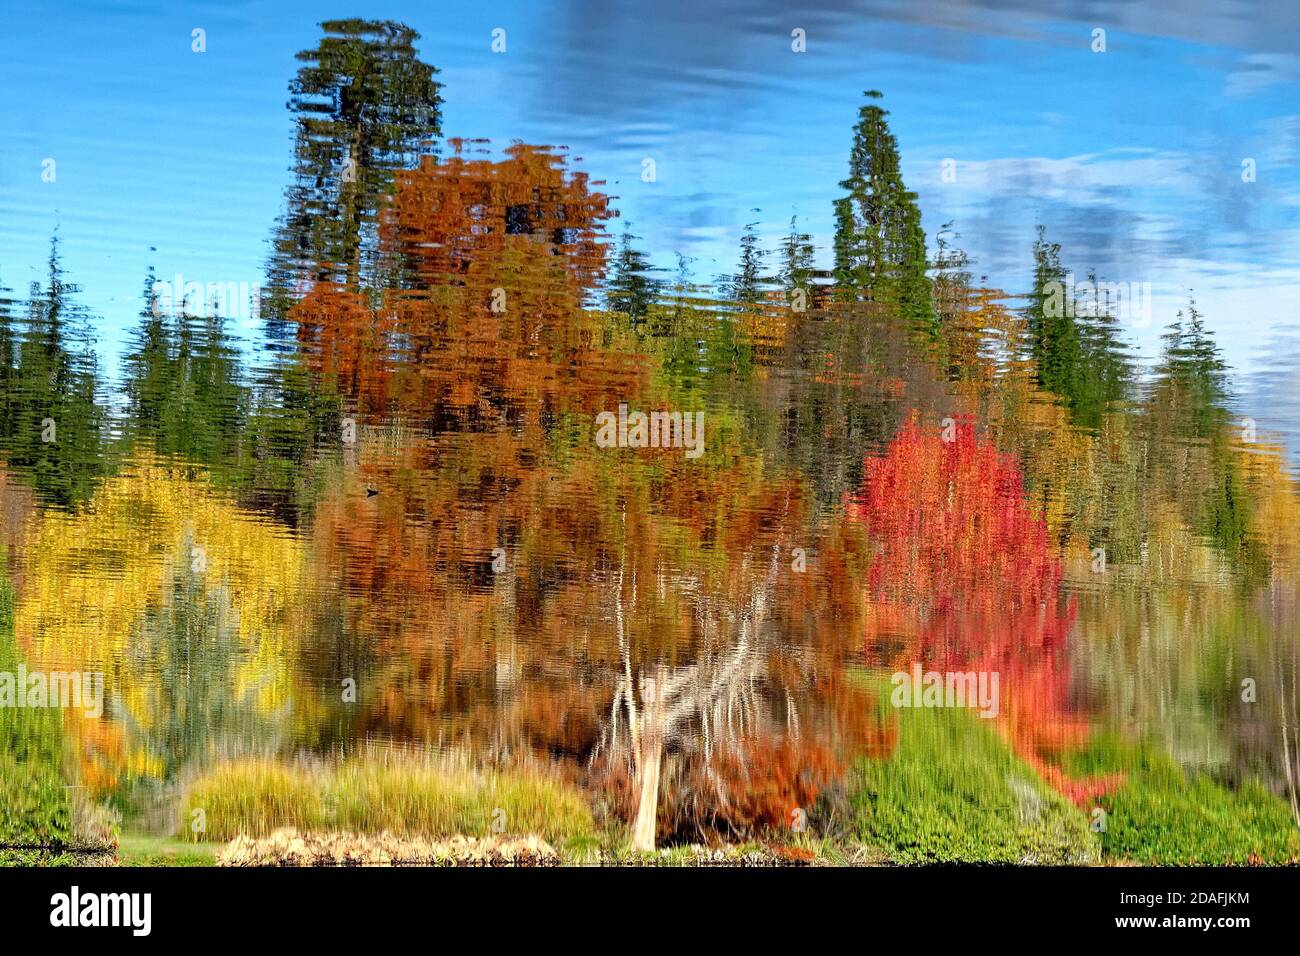 Réflexions abstraites impressionnistes sur la surface de l'eau des arbres d'automne colorés Banque D'Images